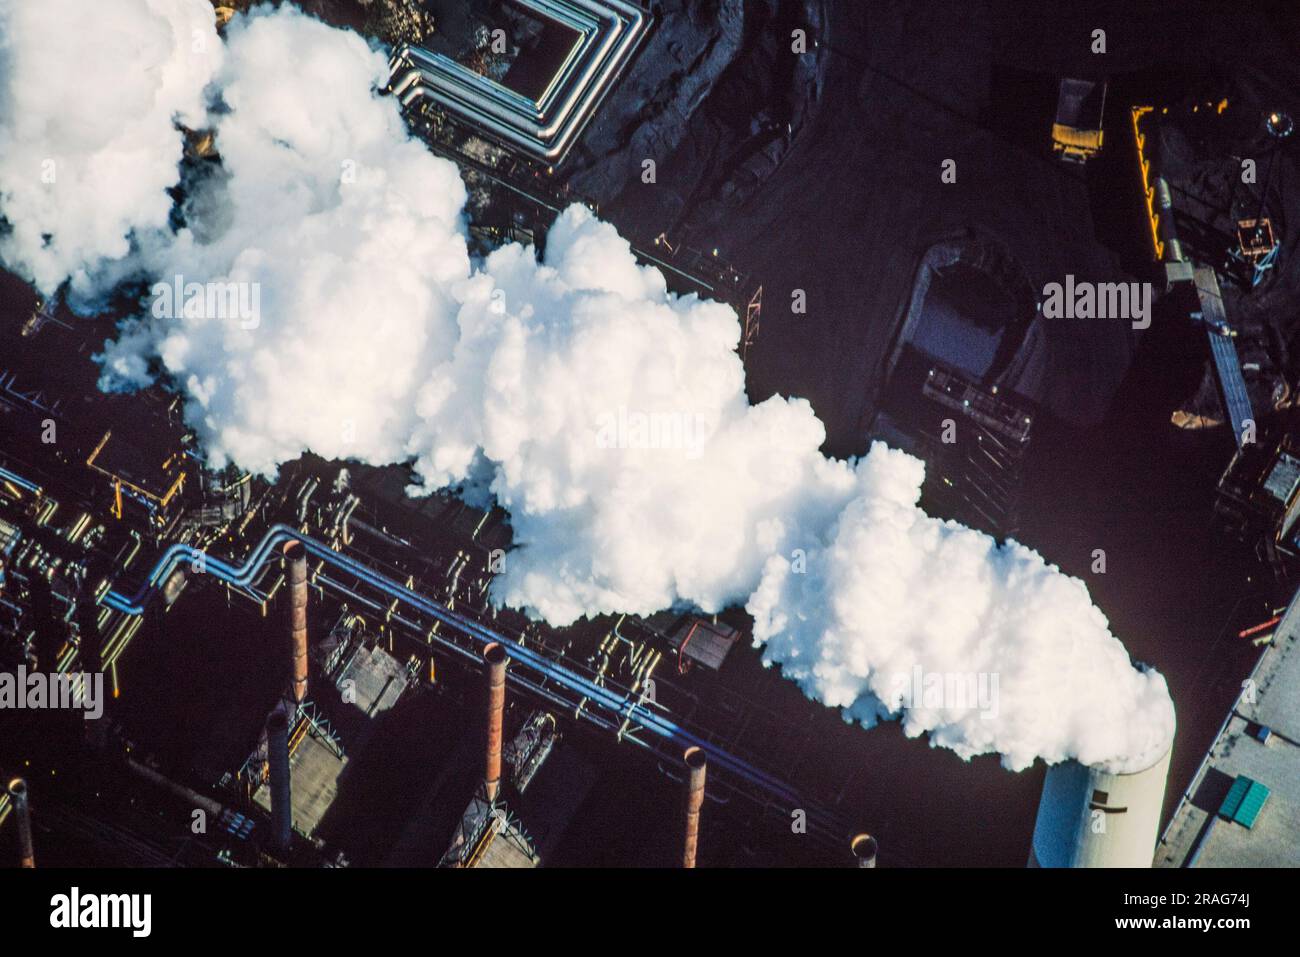 Aerial image of Alberta Tar Sands, Alberta, Canada Stock Photo